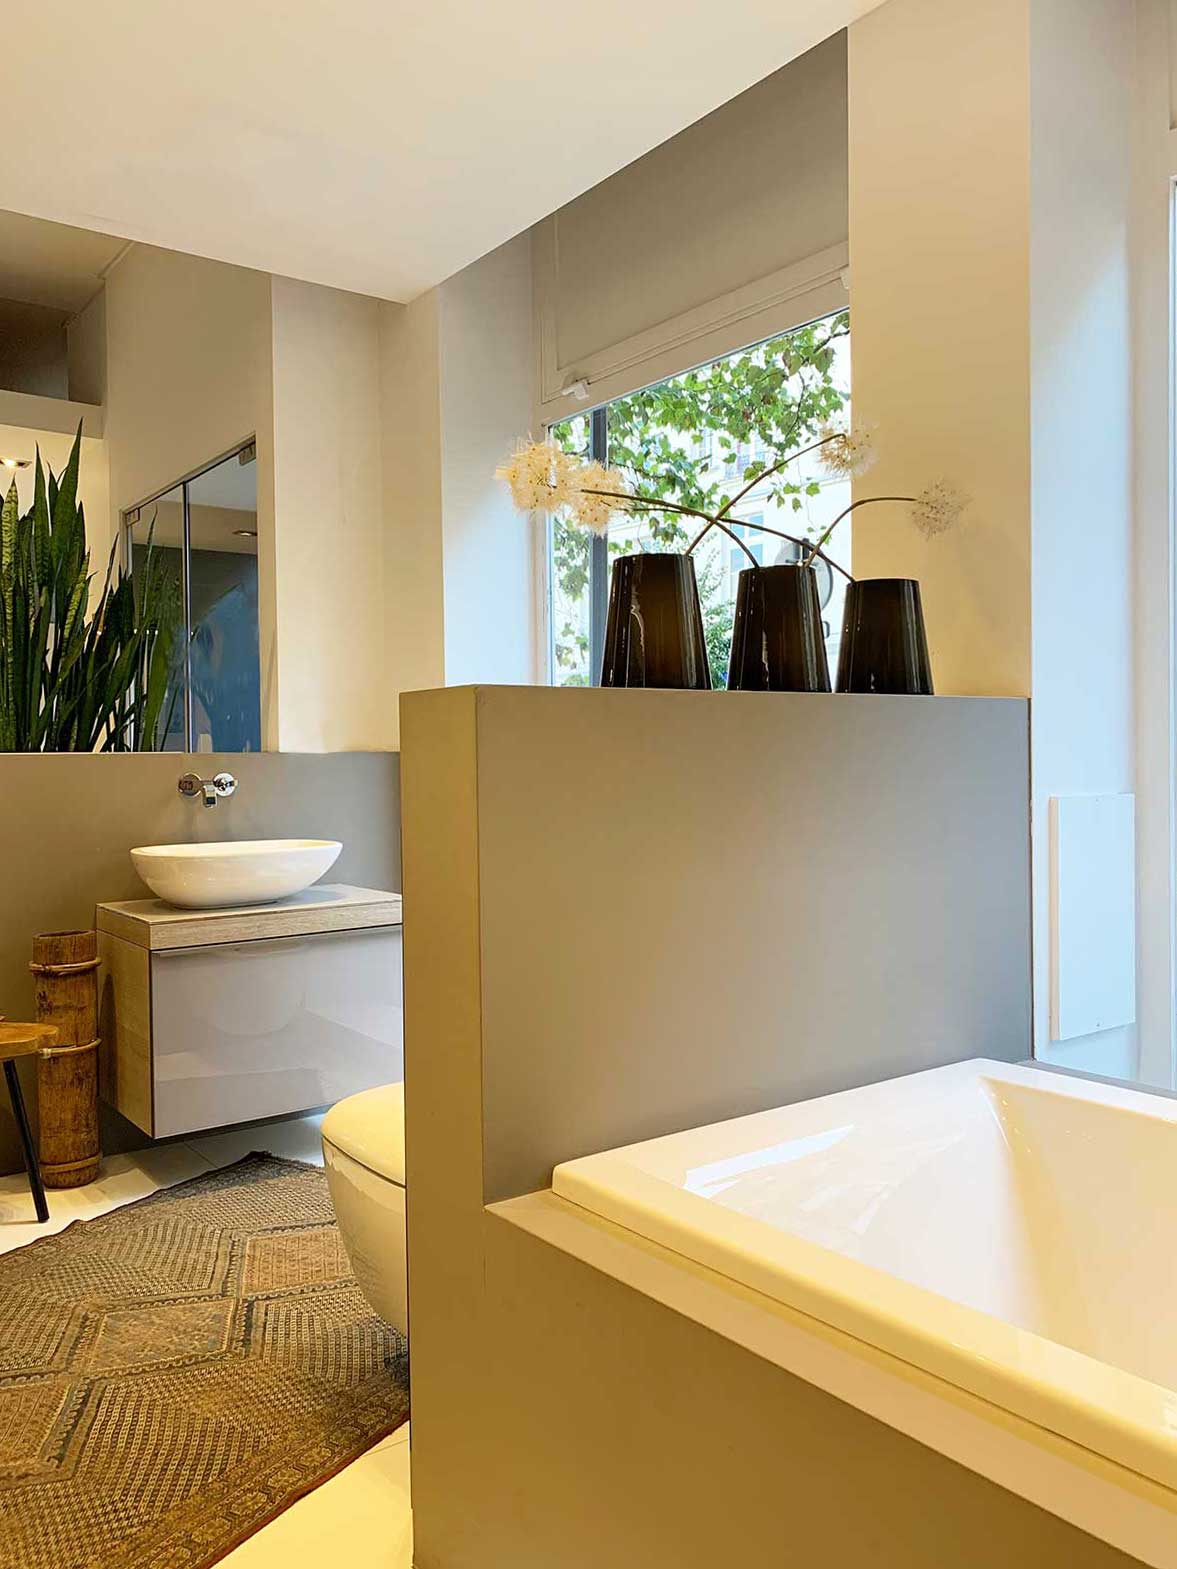 Rénover sa salle de bains par l'exemple - solutions Wedi - Vidéo Dailymotion